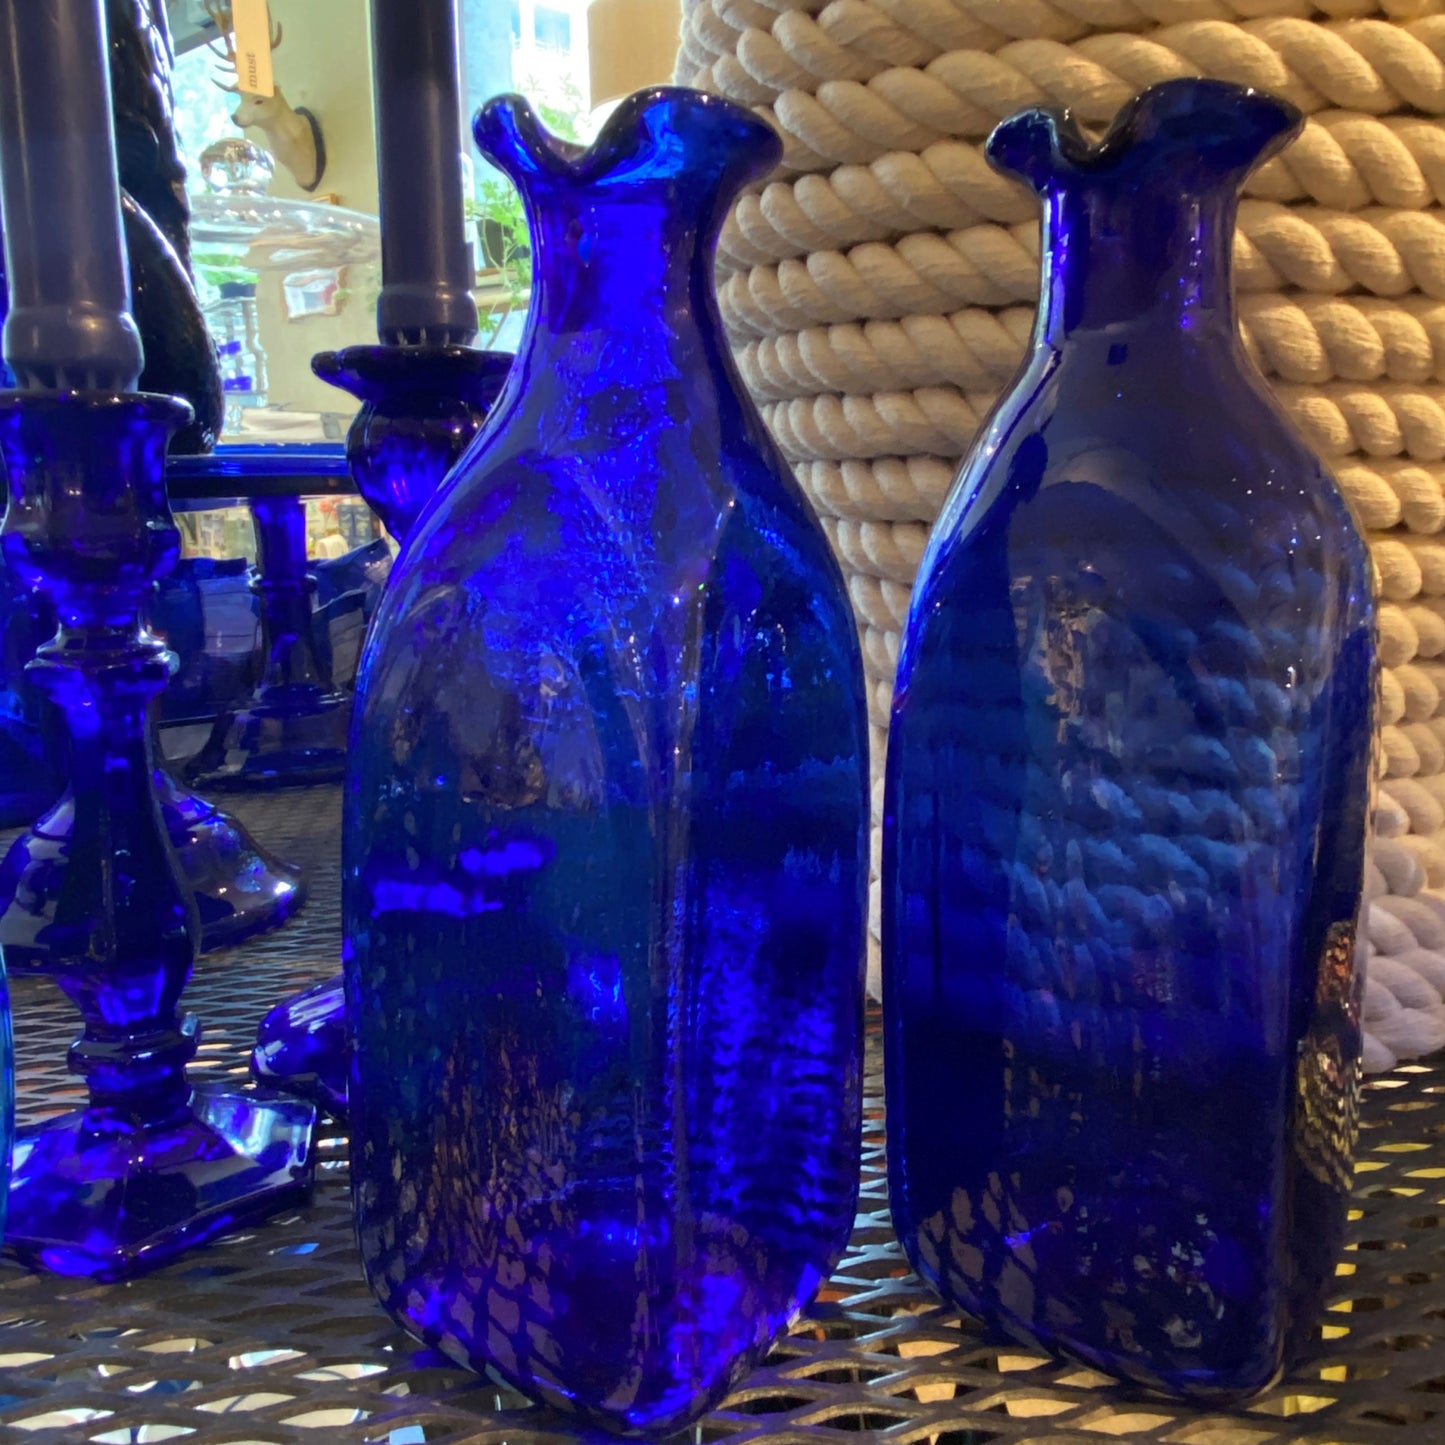 French Frigo Dark Blue Bottle